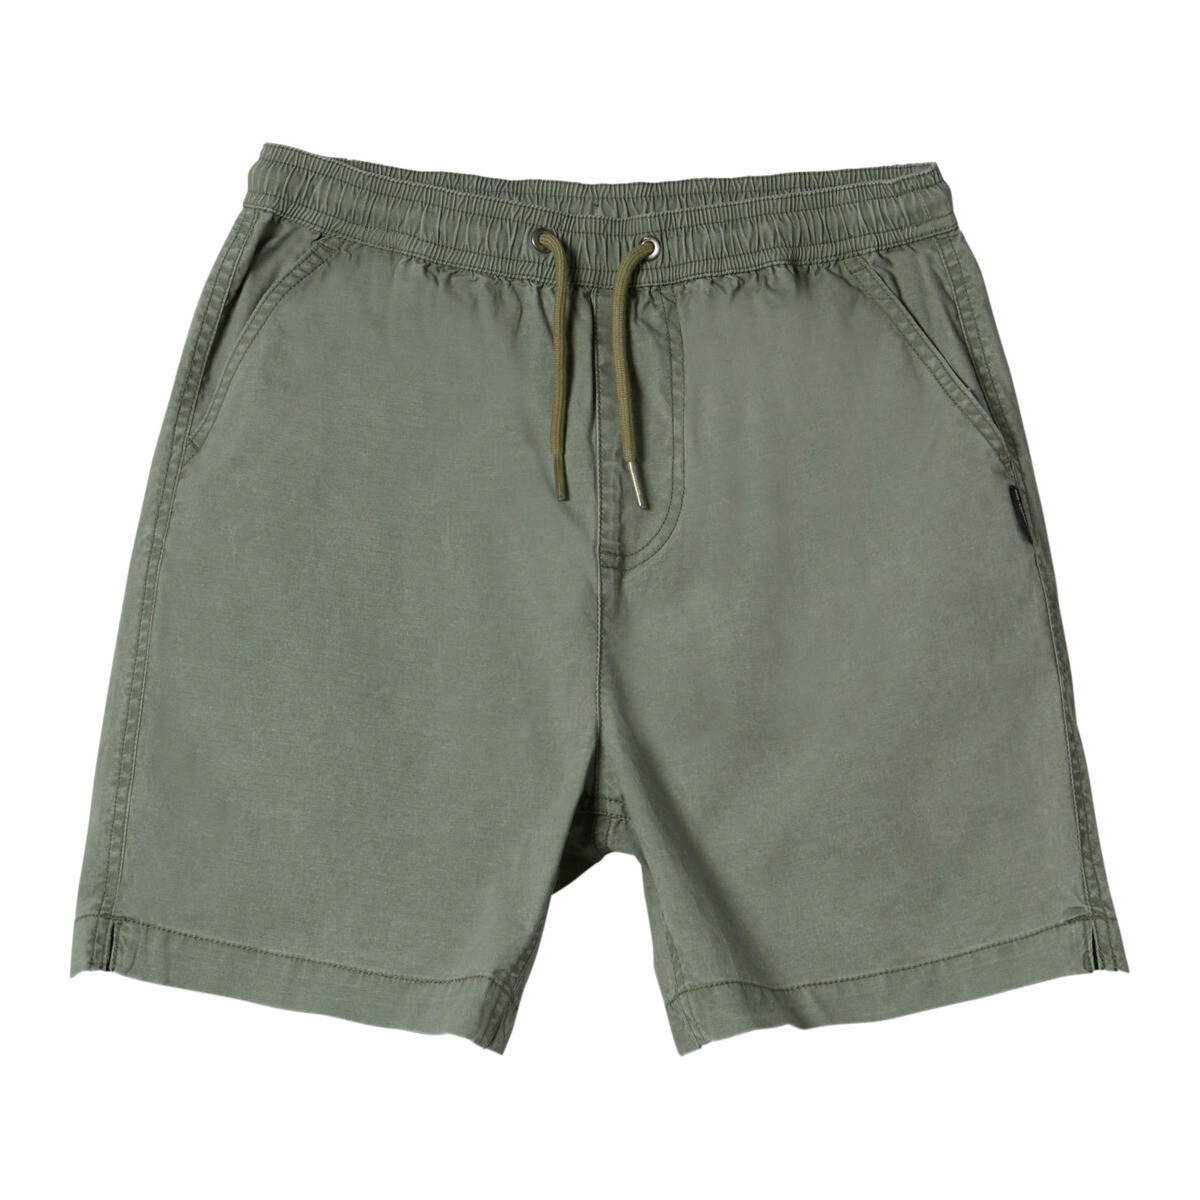 Vêtements Garçon Shorts / Bermudas Quiksilver Taxer Vert